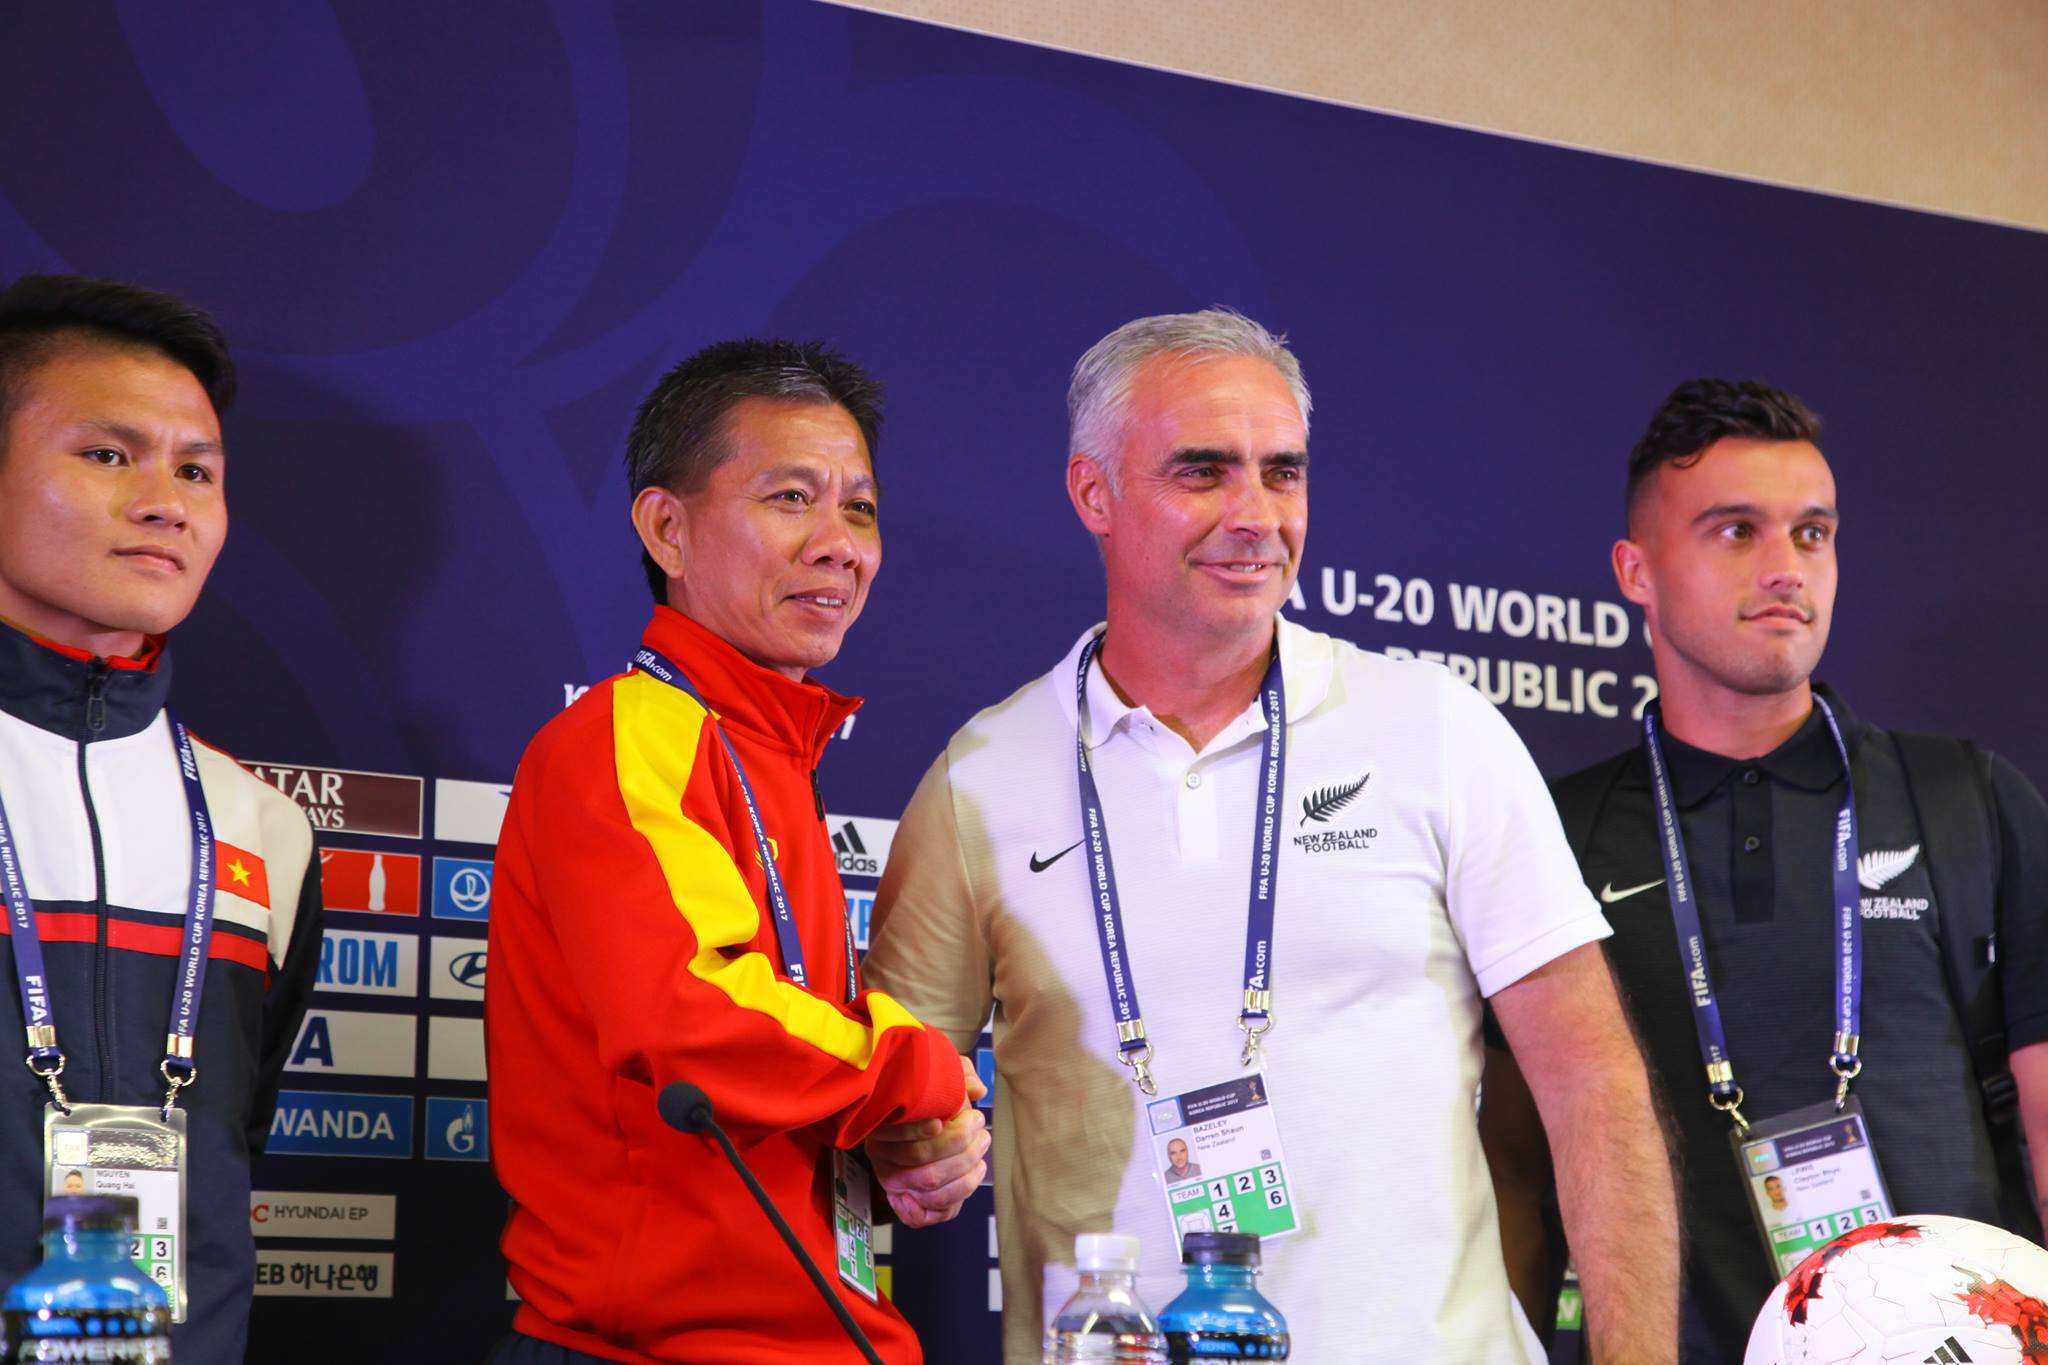 HLV Hoàng Anh Tuấn rất hài lòng về cả kết quả lẫn cách chơi của U20 Việt Nam ở trận này.